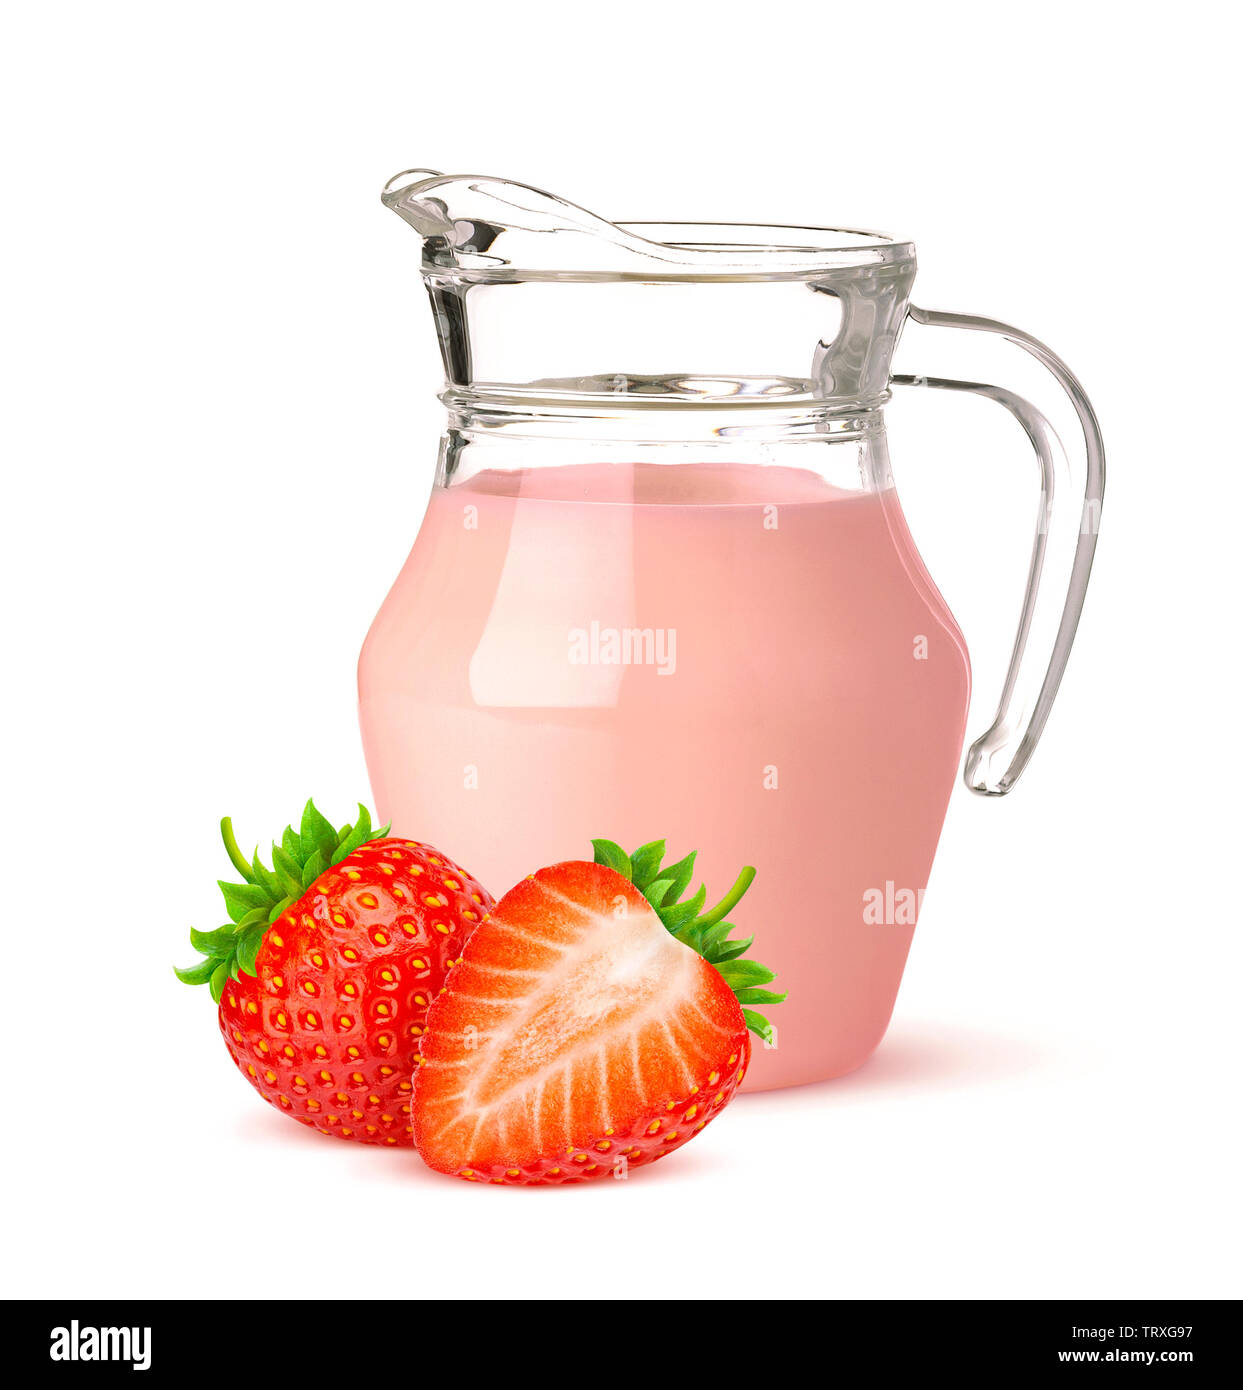 Jug of strawberry yogurt isolated on white background Stock Photo